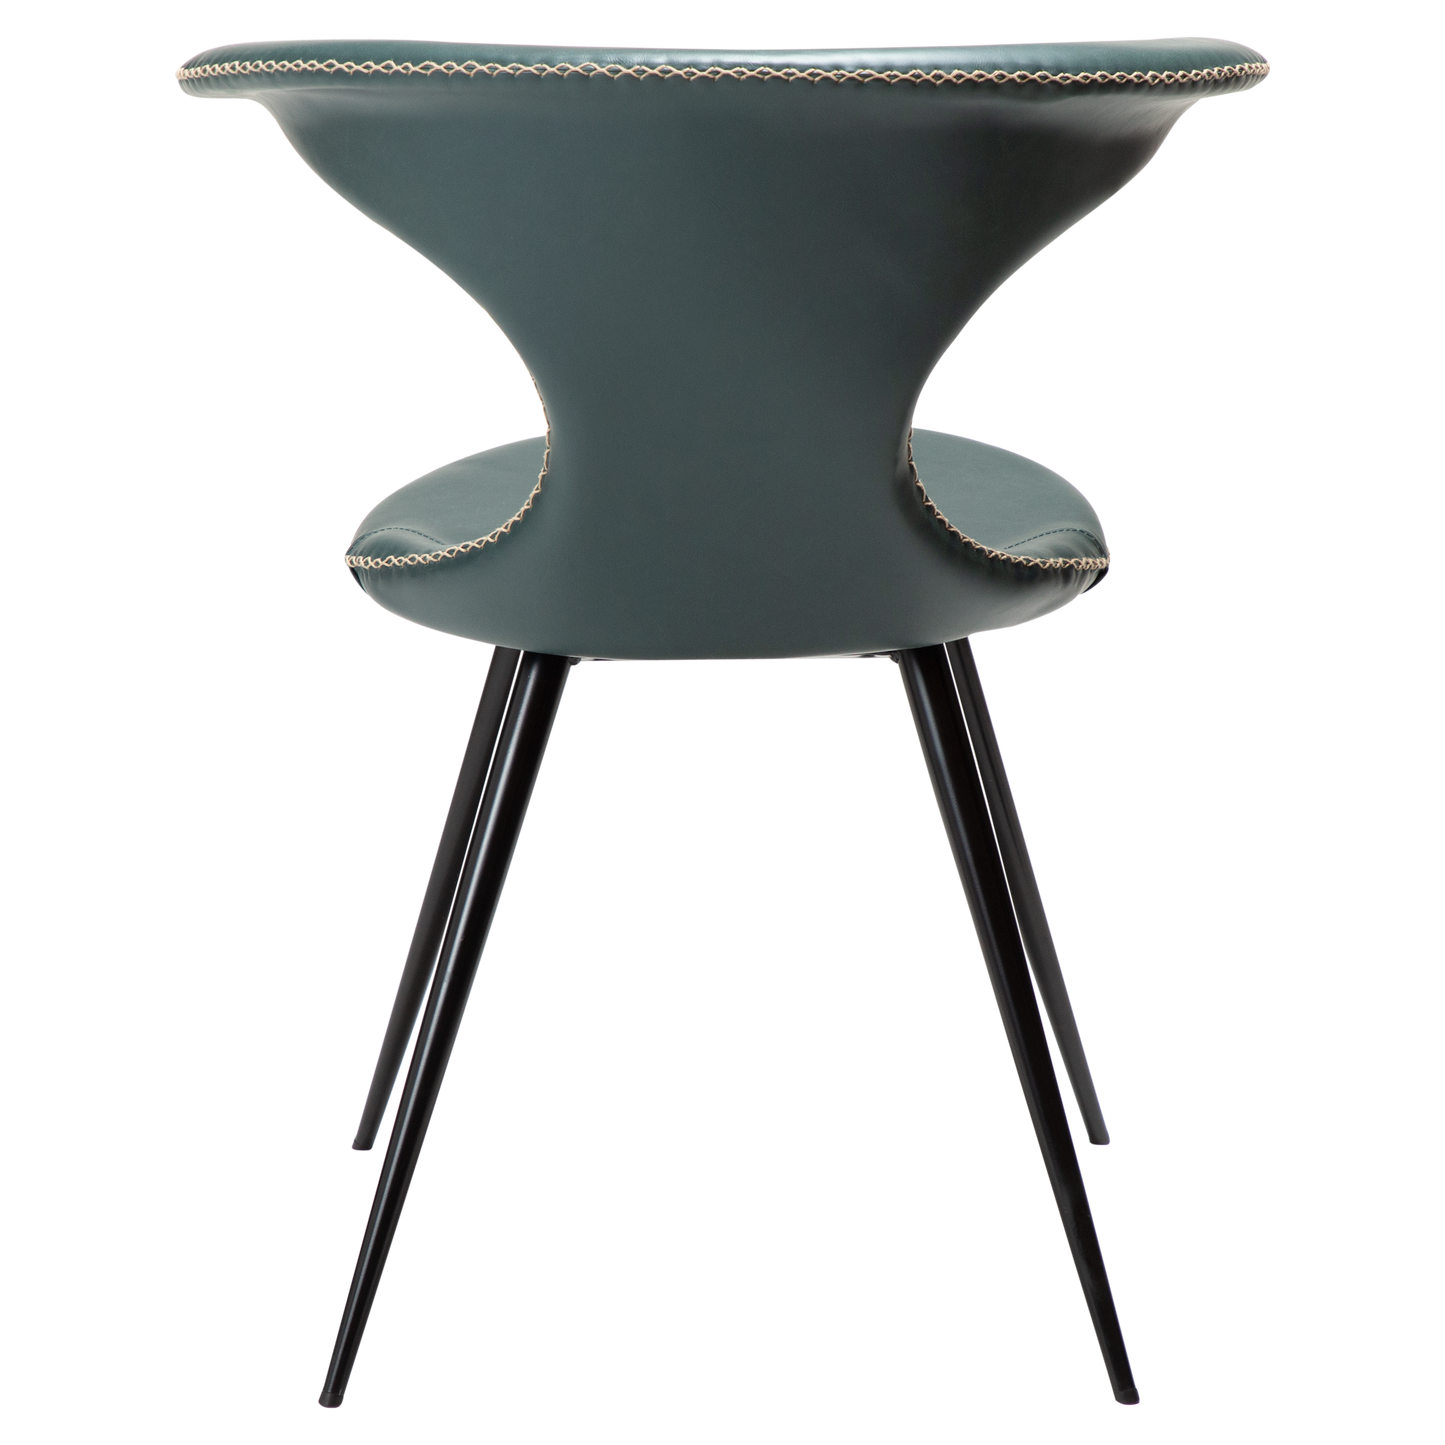 2 stk. FLAIR Spisebordsstol, grøn kunstlæder, sorte metal ben.